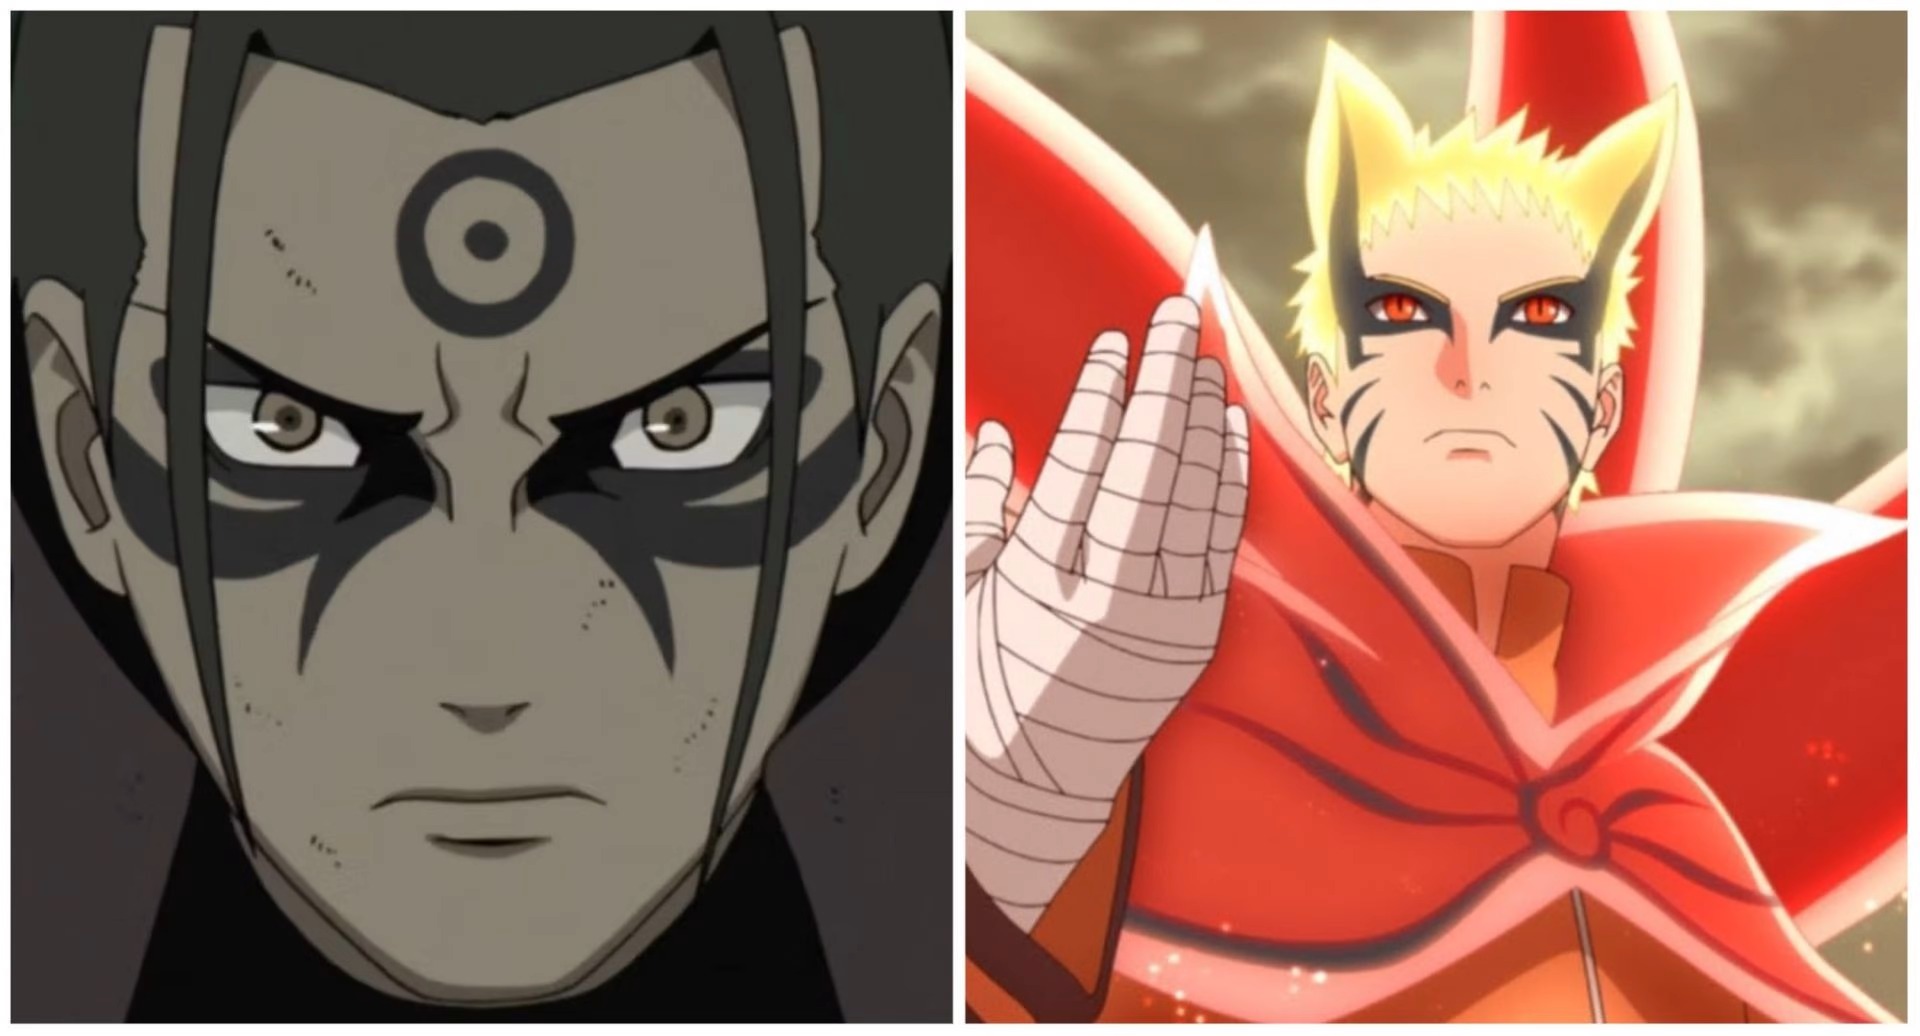 Naruto VS Hashirama - Quem venceria esse duelo 1 contra 1?